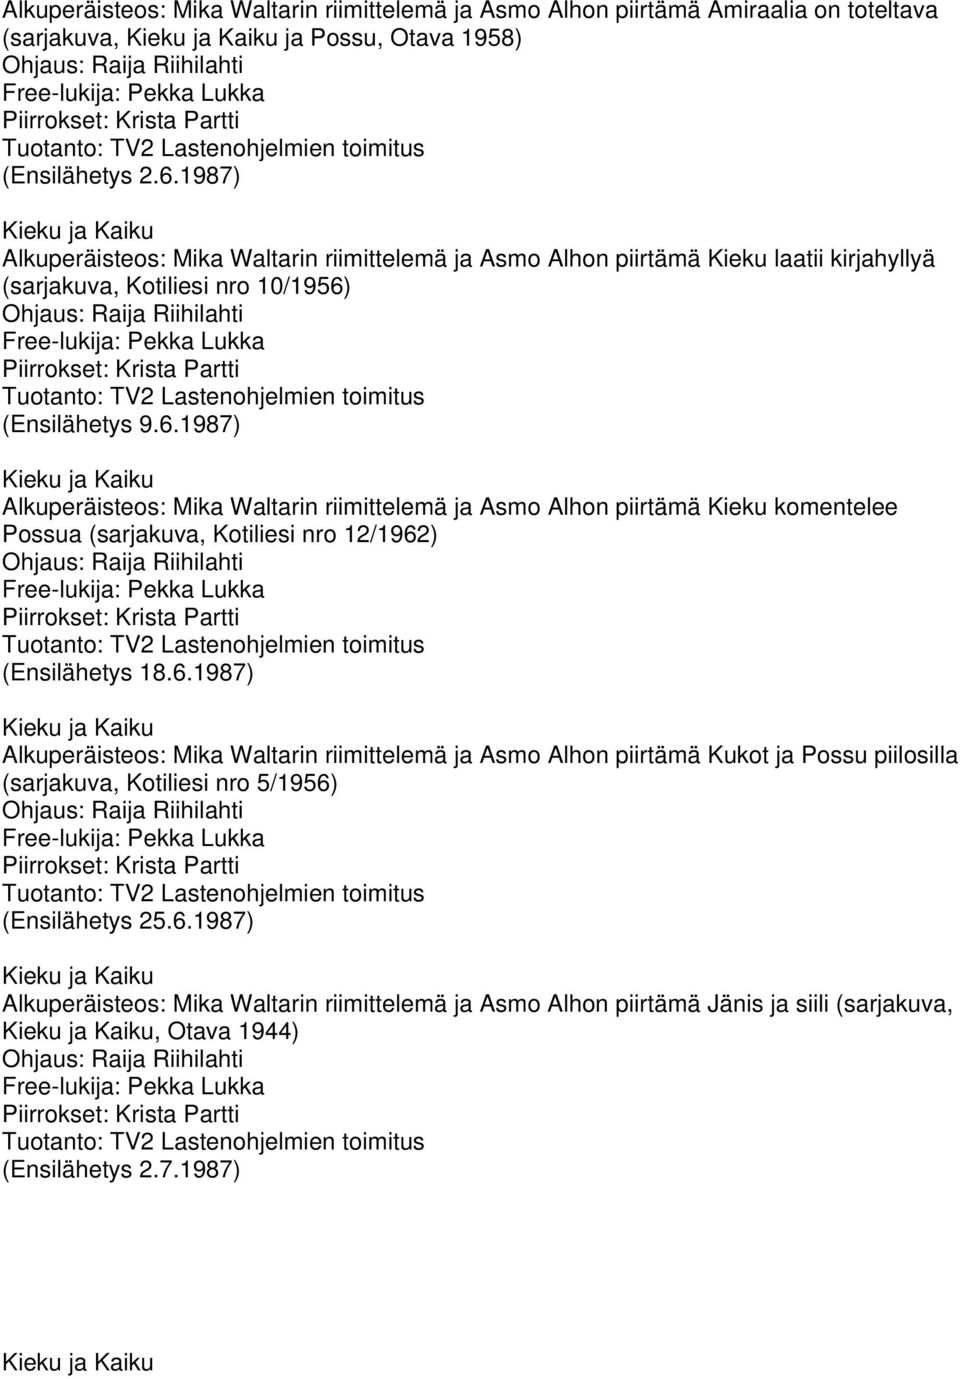 (Ensilähetys 9.6.1987) Alkuperäisteos: Mika Waltarin riimittelemä ja Asmo Alhon piirtämä Kieku komentelee Possua (sarjakuva, Kotiliesi nro 12/1962) (Ensilähetys 18.6.1987) Alkuperäisteos: Mika Waltarin riimittelemä ja Asmo Alhon piirtämä Kukot ja Possu piilosilla (sarjakuva, Kotiliesi nro 5/1956) (Ensilähetys 25.